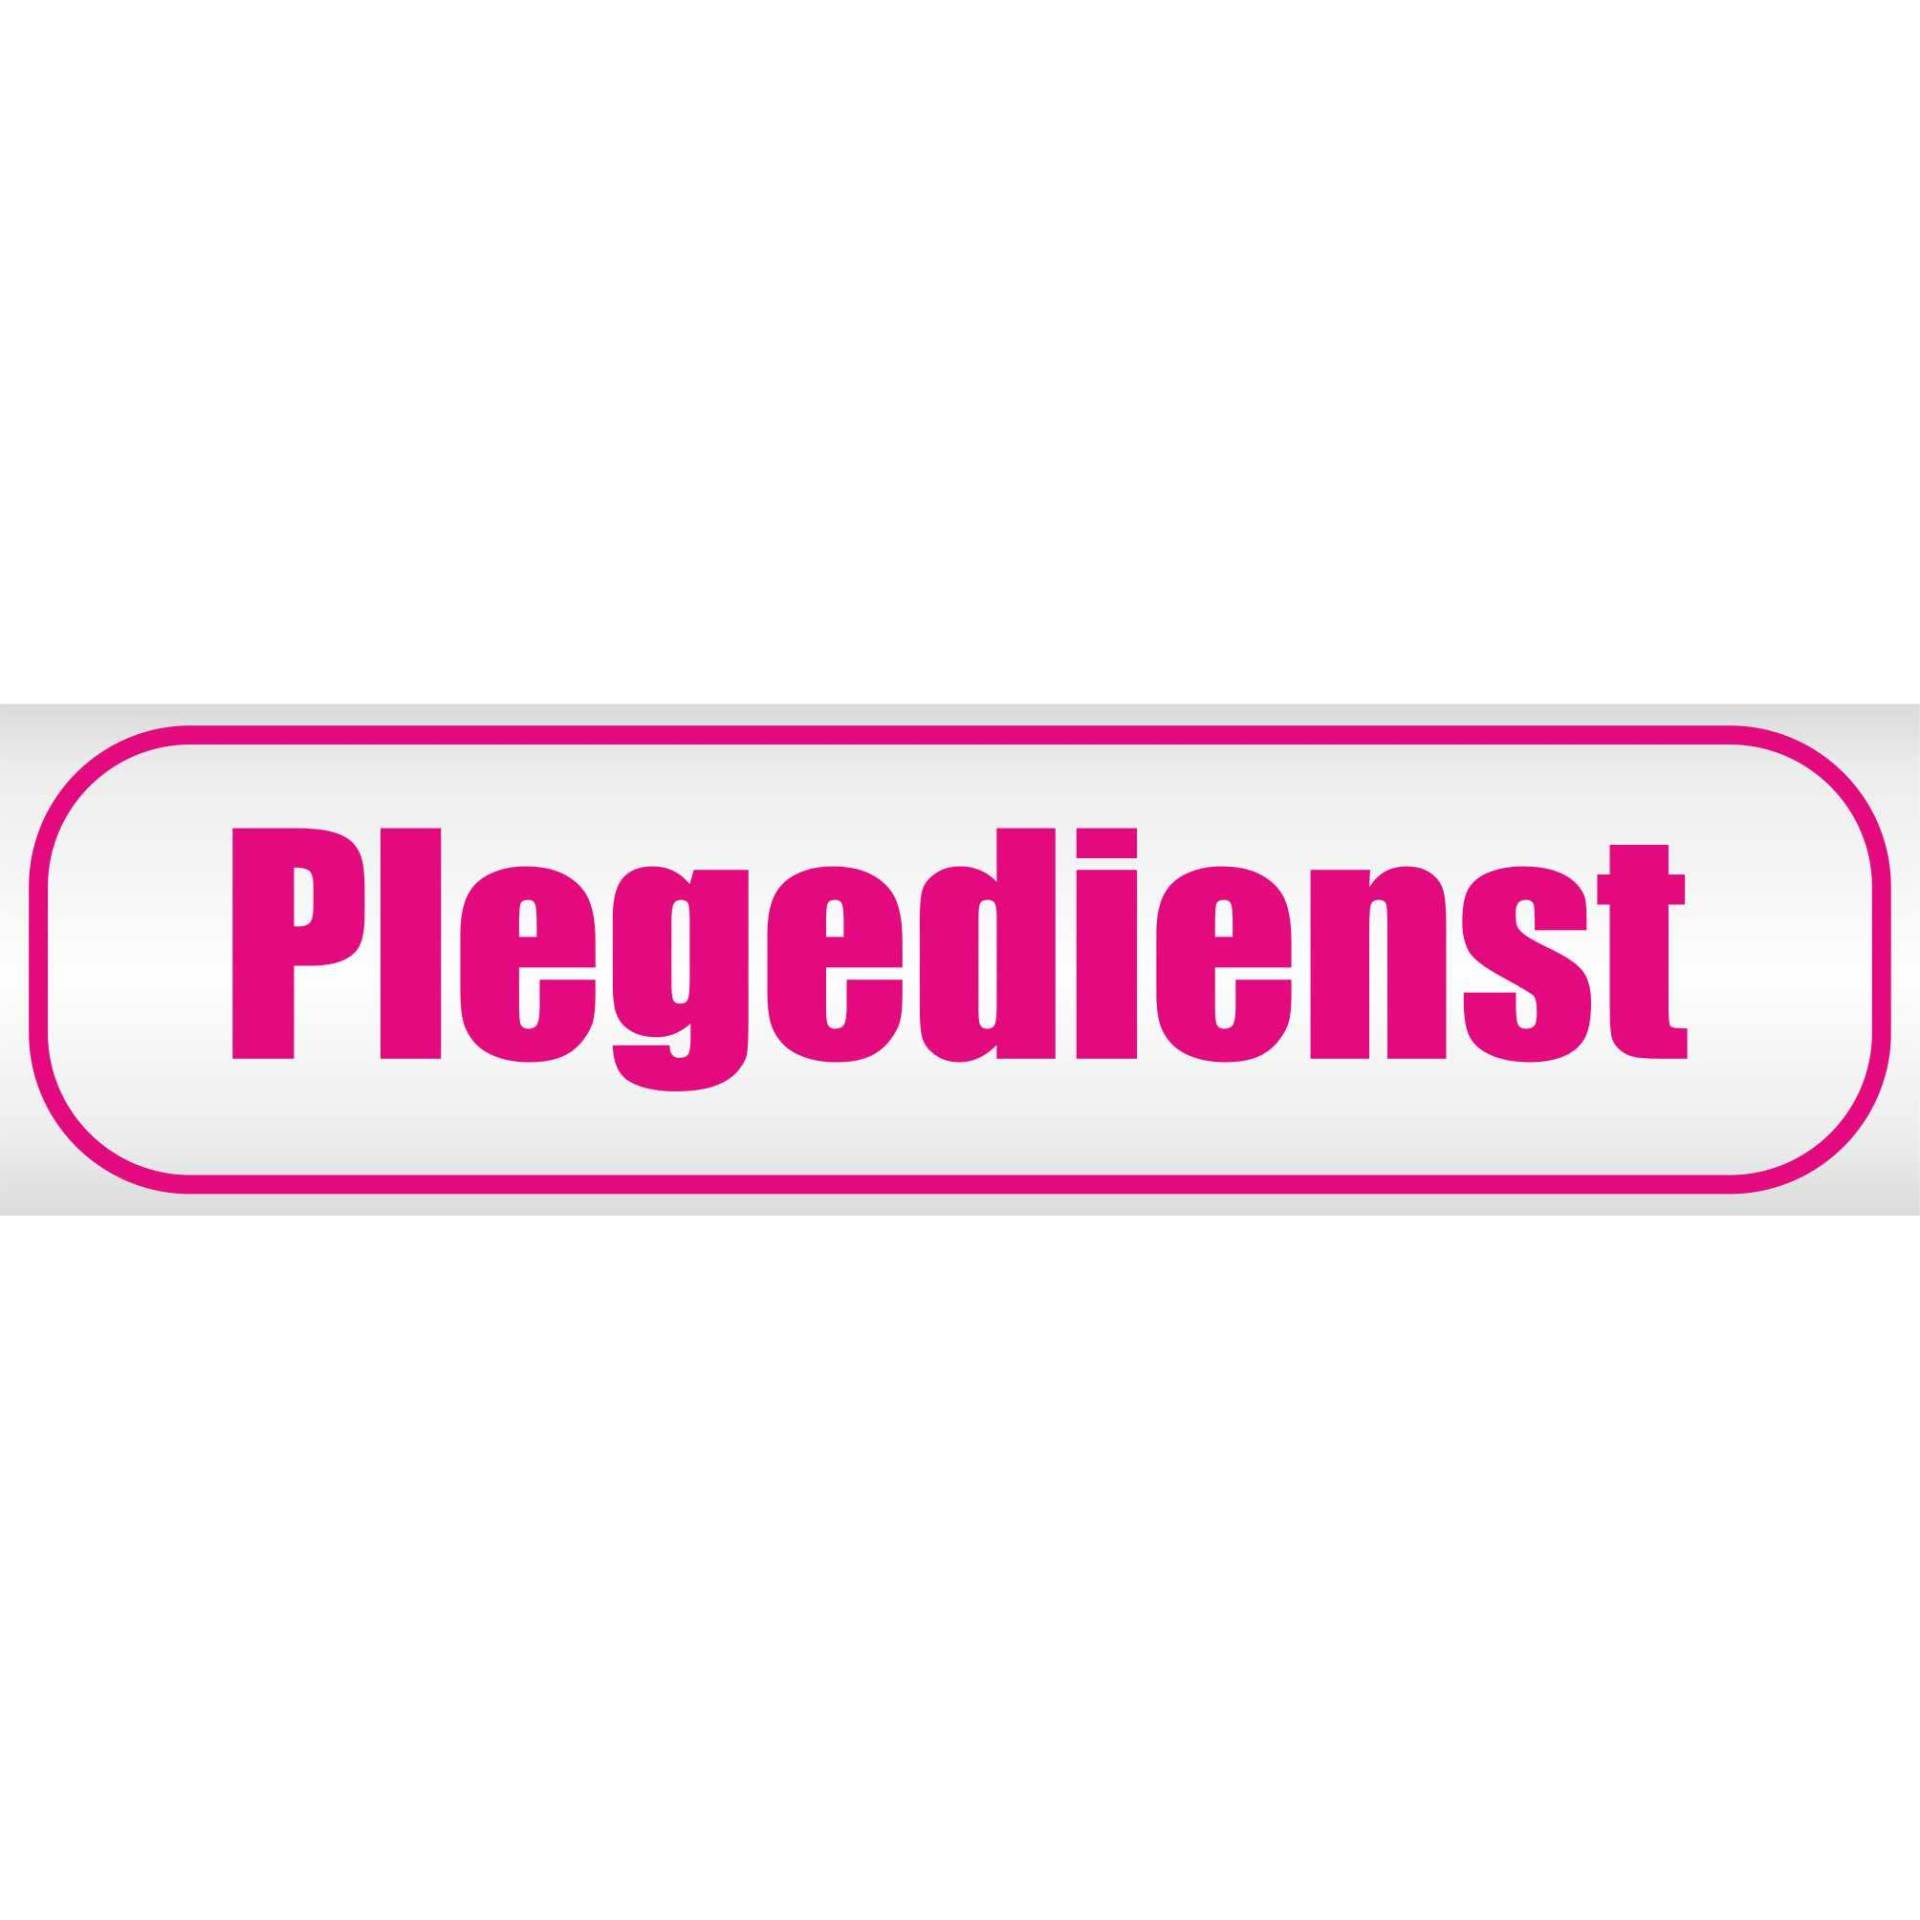 INDIGOS UG - Magnetschild Pflegedienst 30 x 8 cm pink - Magnetfolie für Auto - LKW - Truck - Baustelle - Firma von INDIGOS UG